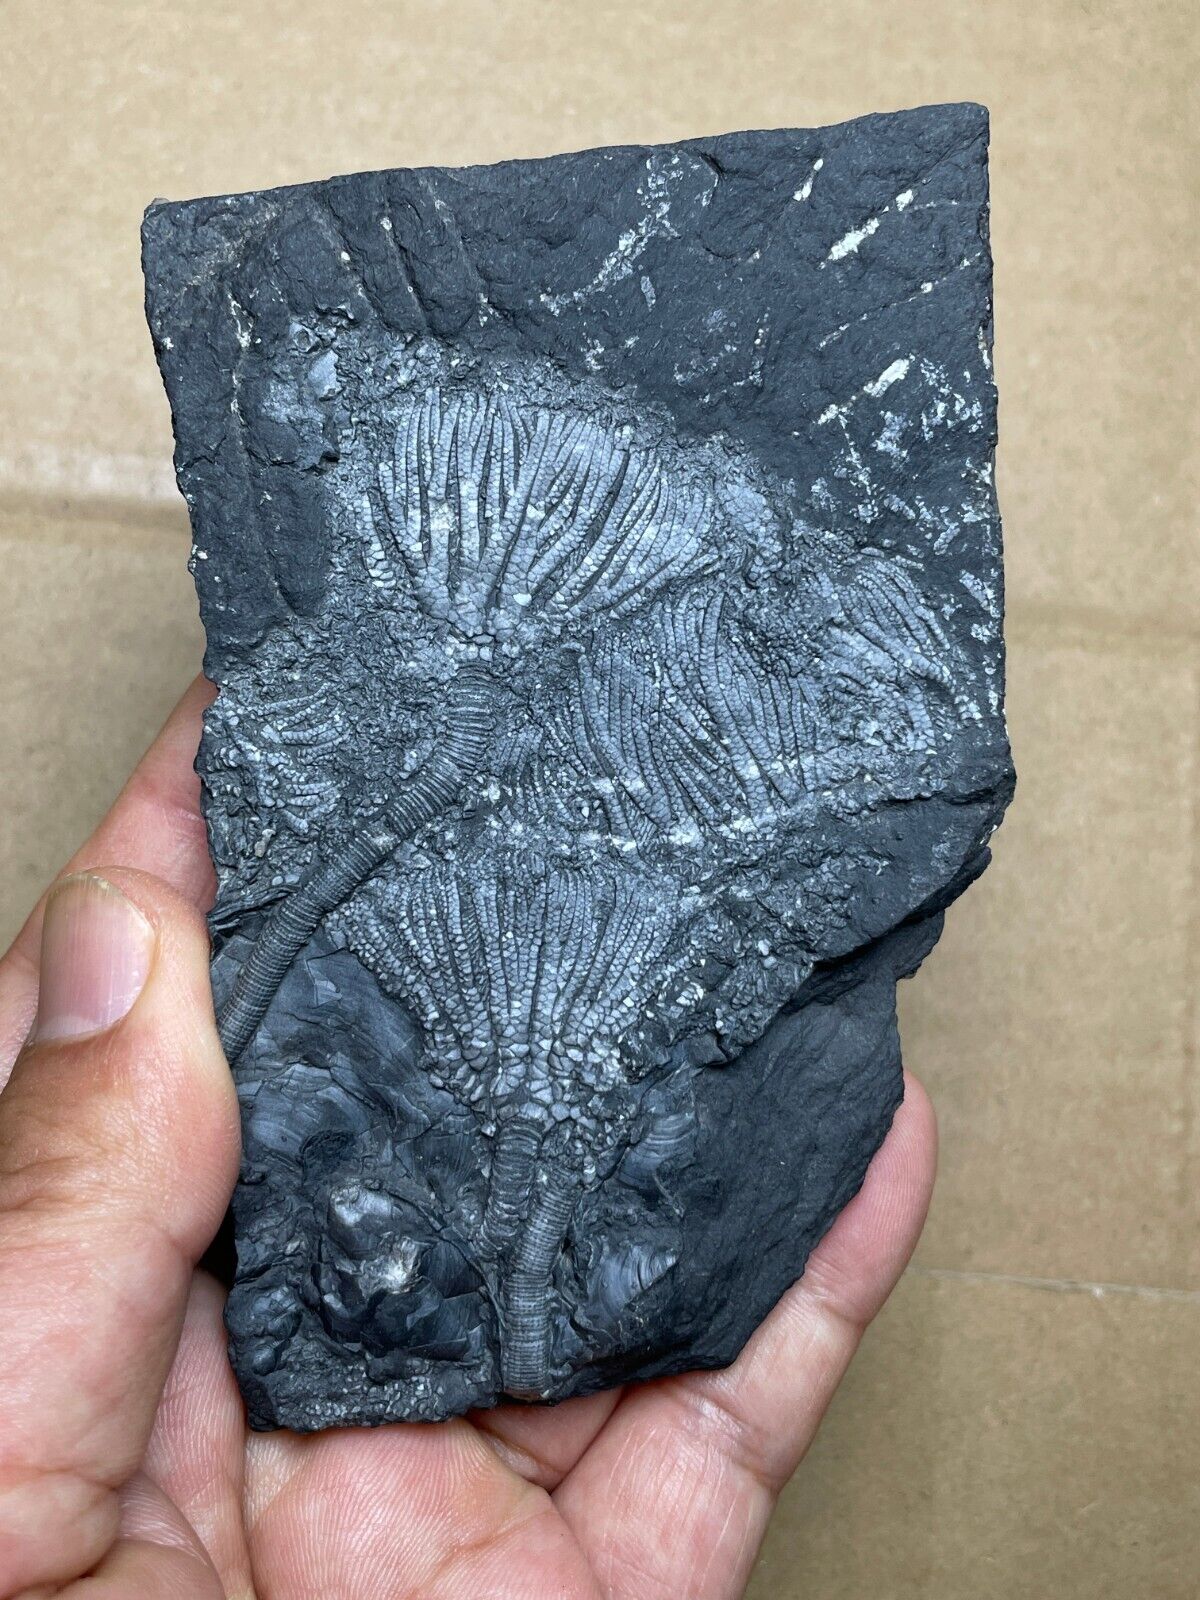 178g Triassic Natural crinoid specimen Geologic rock